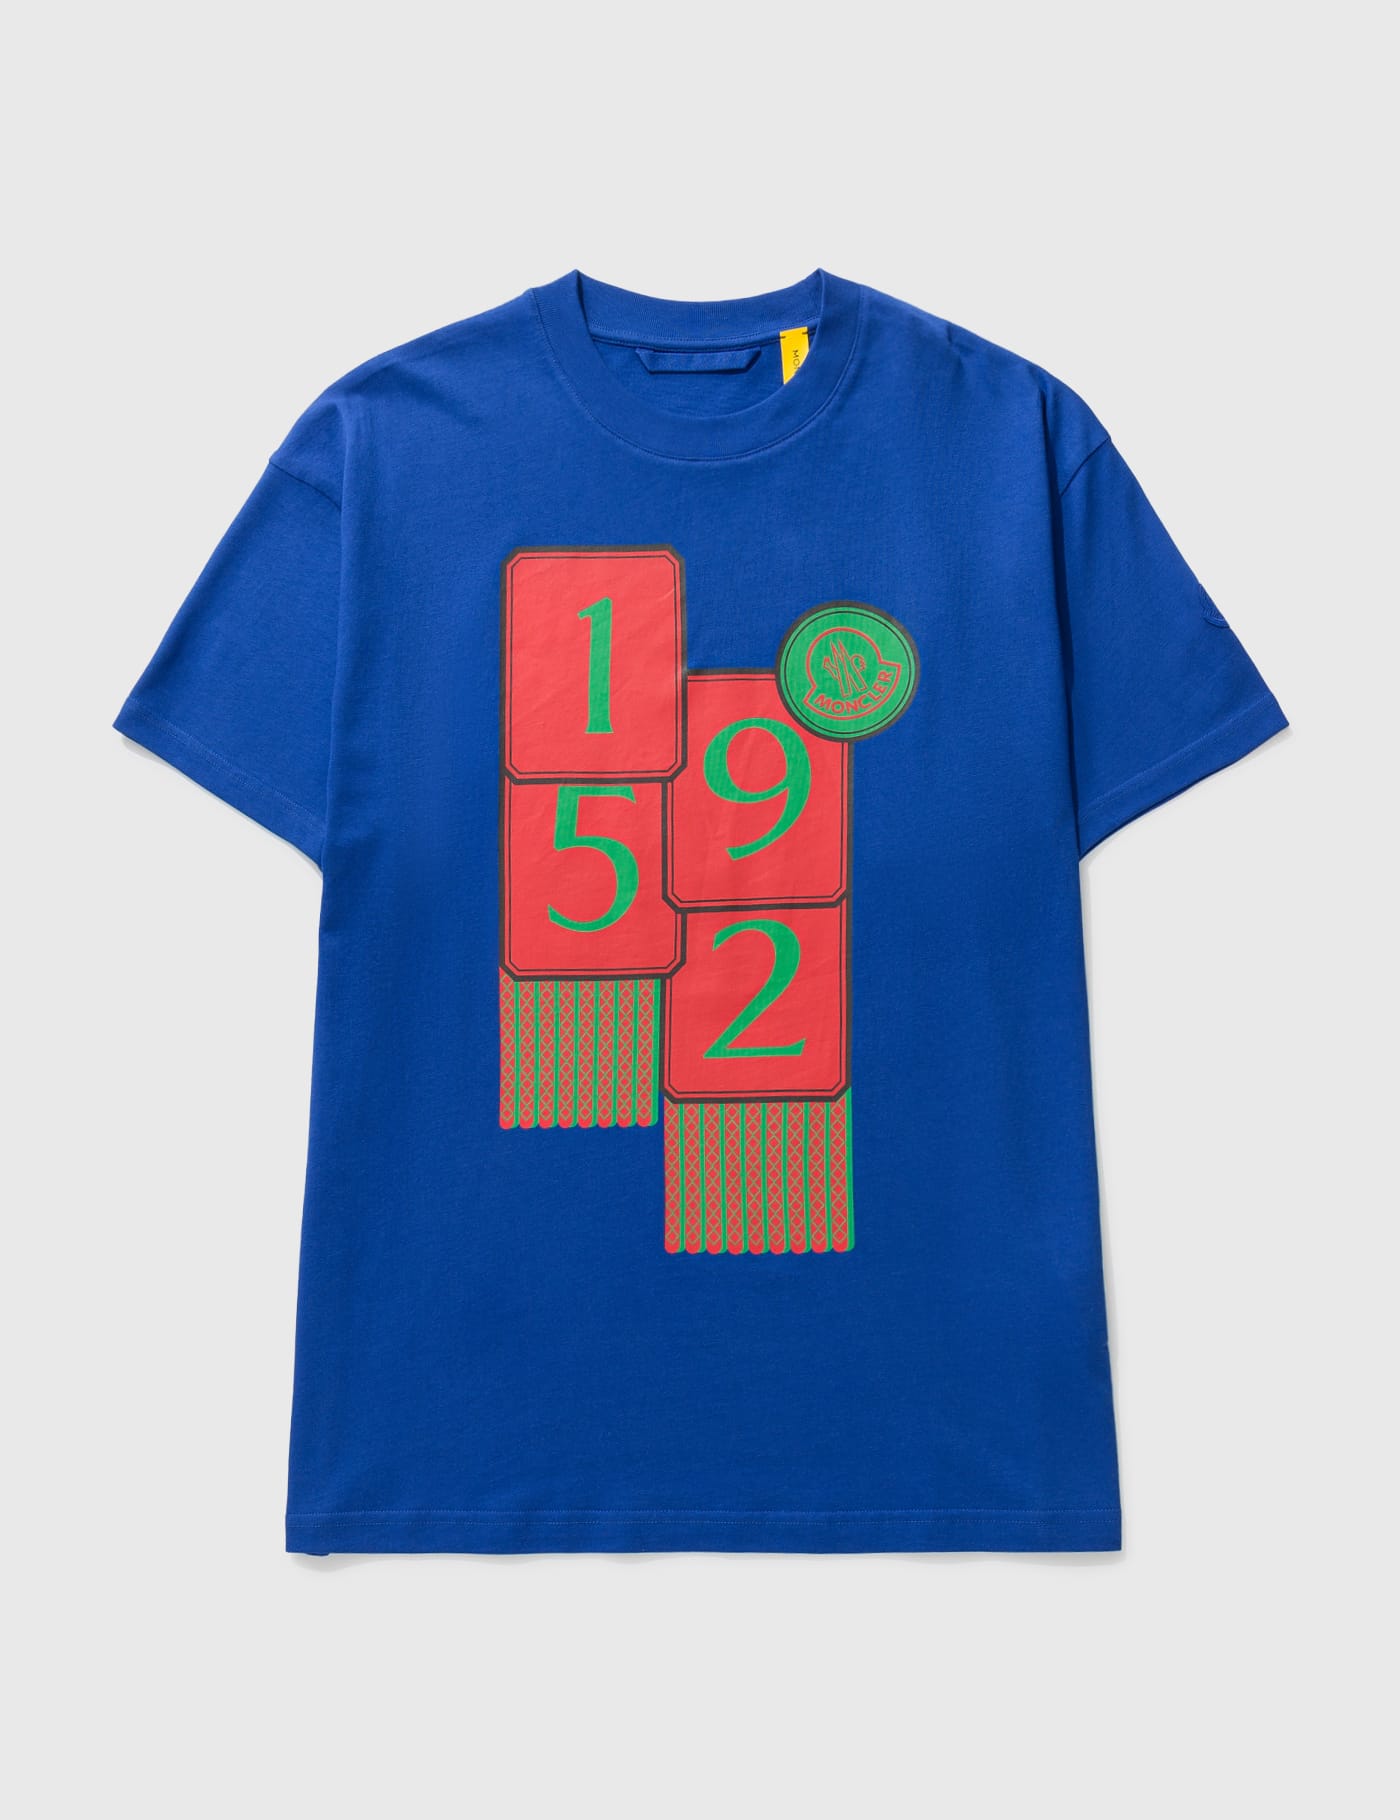 モンクレール 2MONCLER1952 Tシャツ